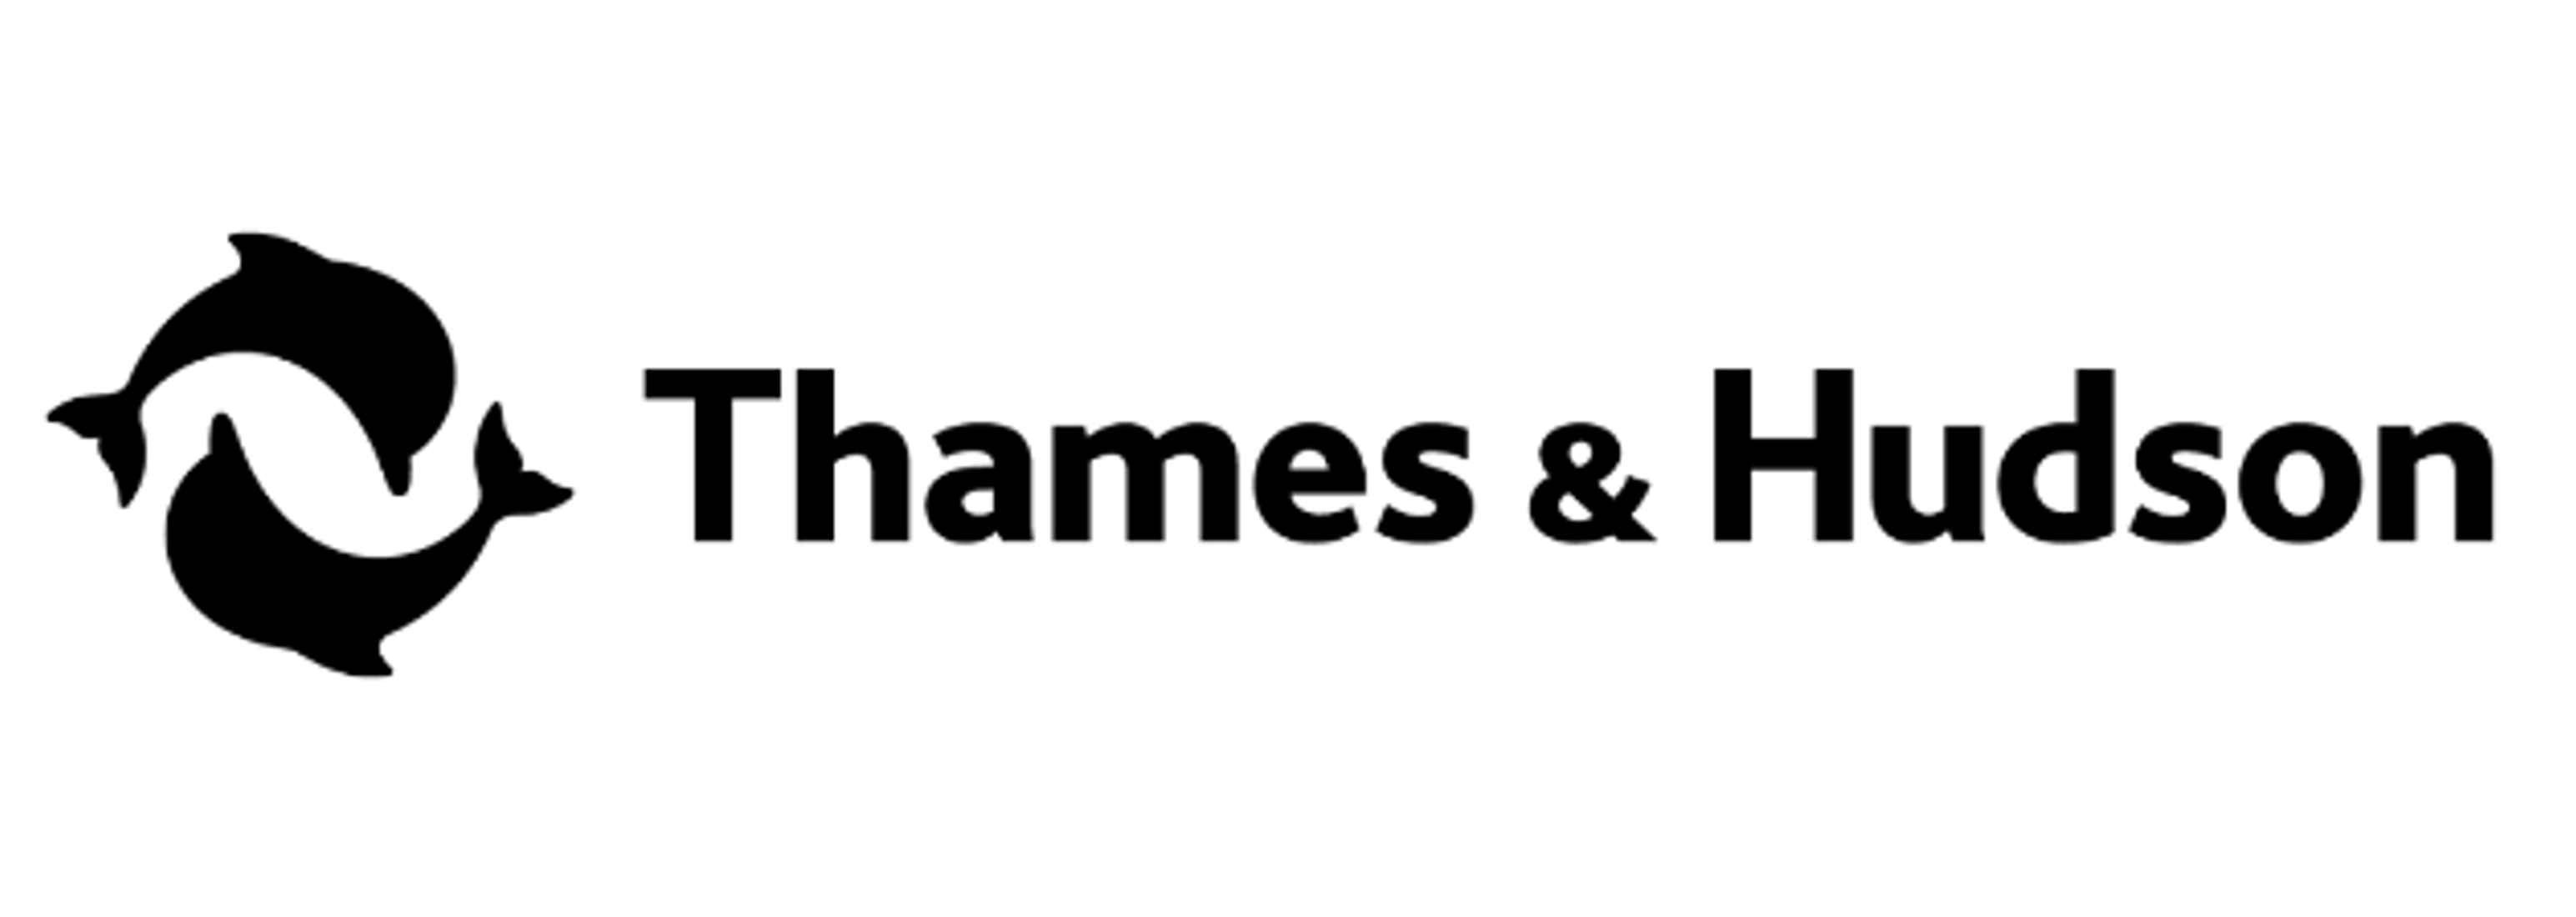 Thames & Hudson Ltd. Jobs & Projects